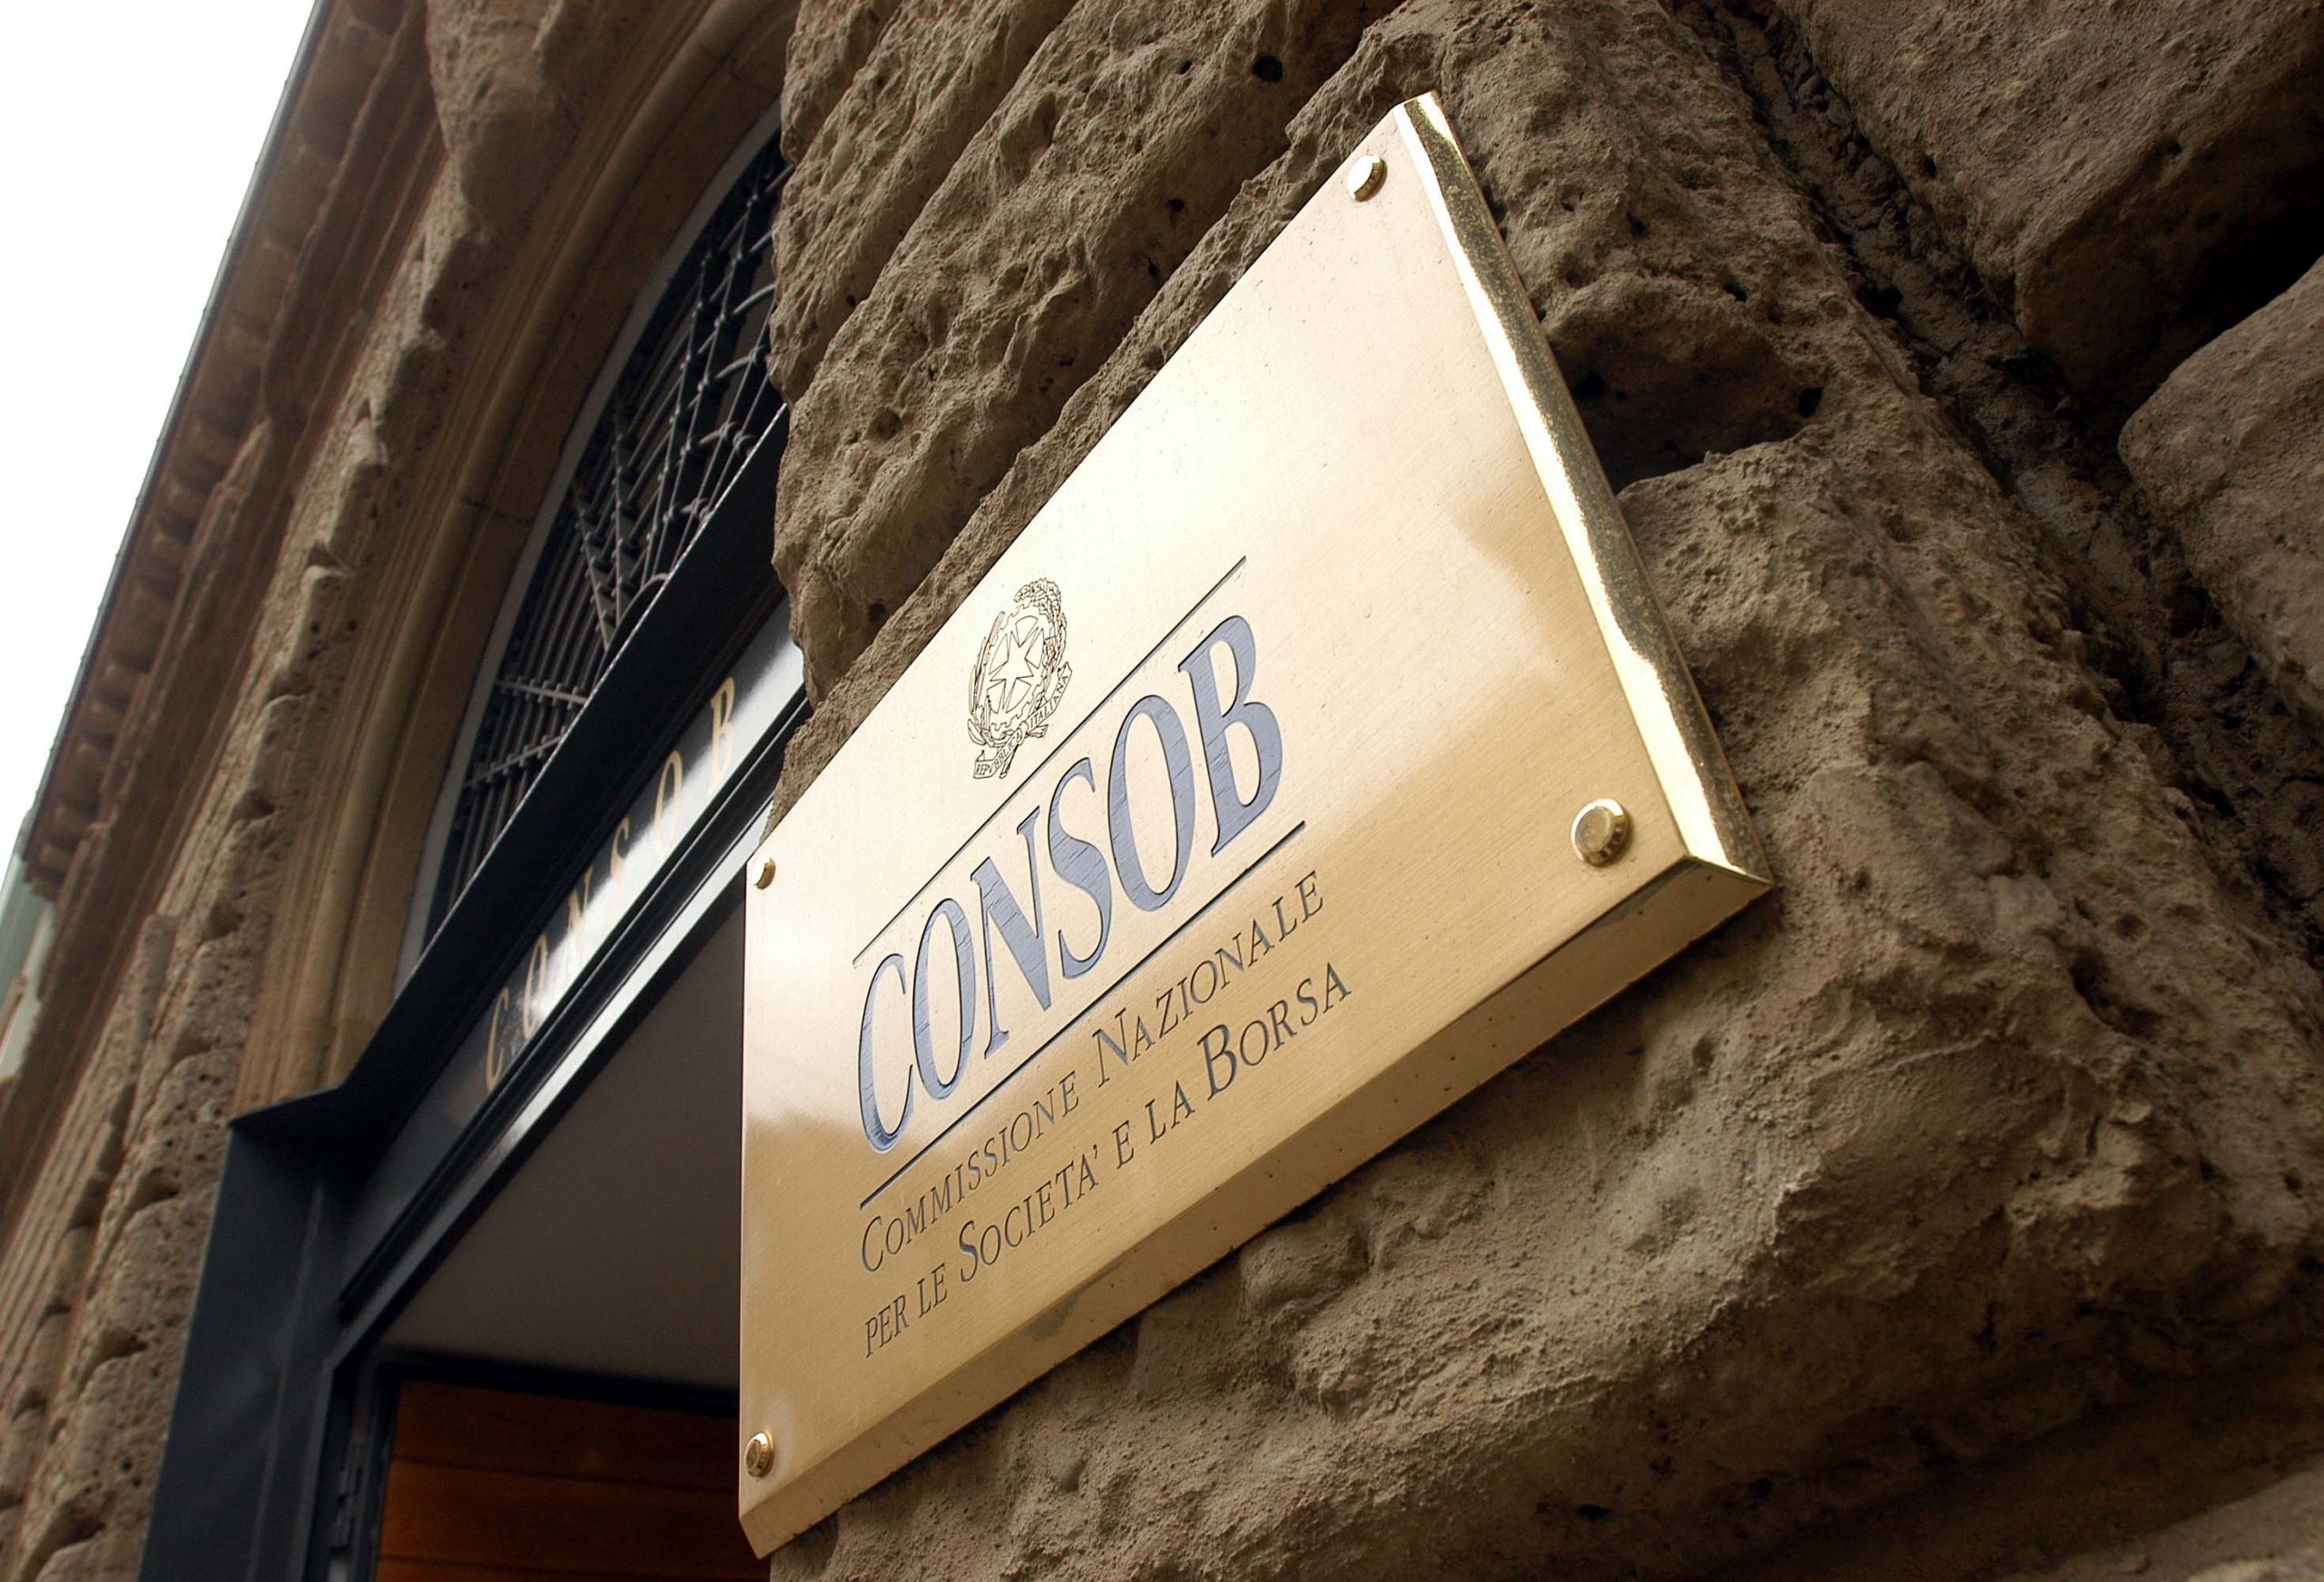 أمرت الهيئة الإيطالية للشركات والبورصة (CONSOB) بحظر الوصول إلى سبع مواقع إلكترونية غير مصرح بها